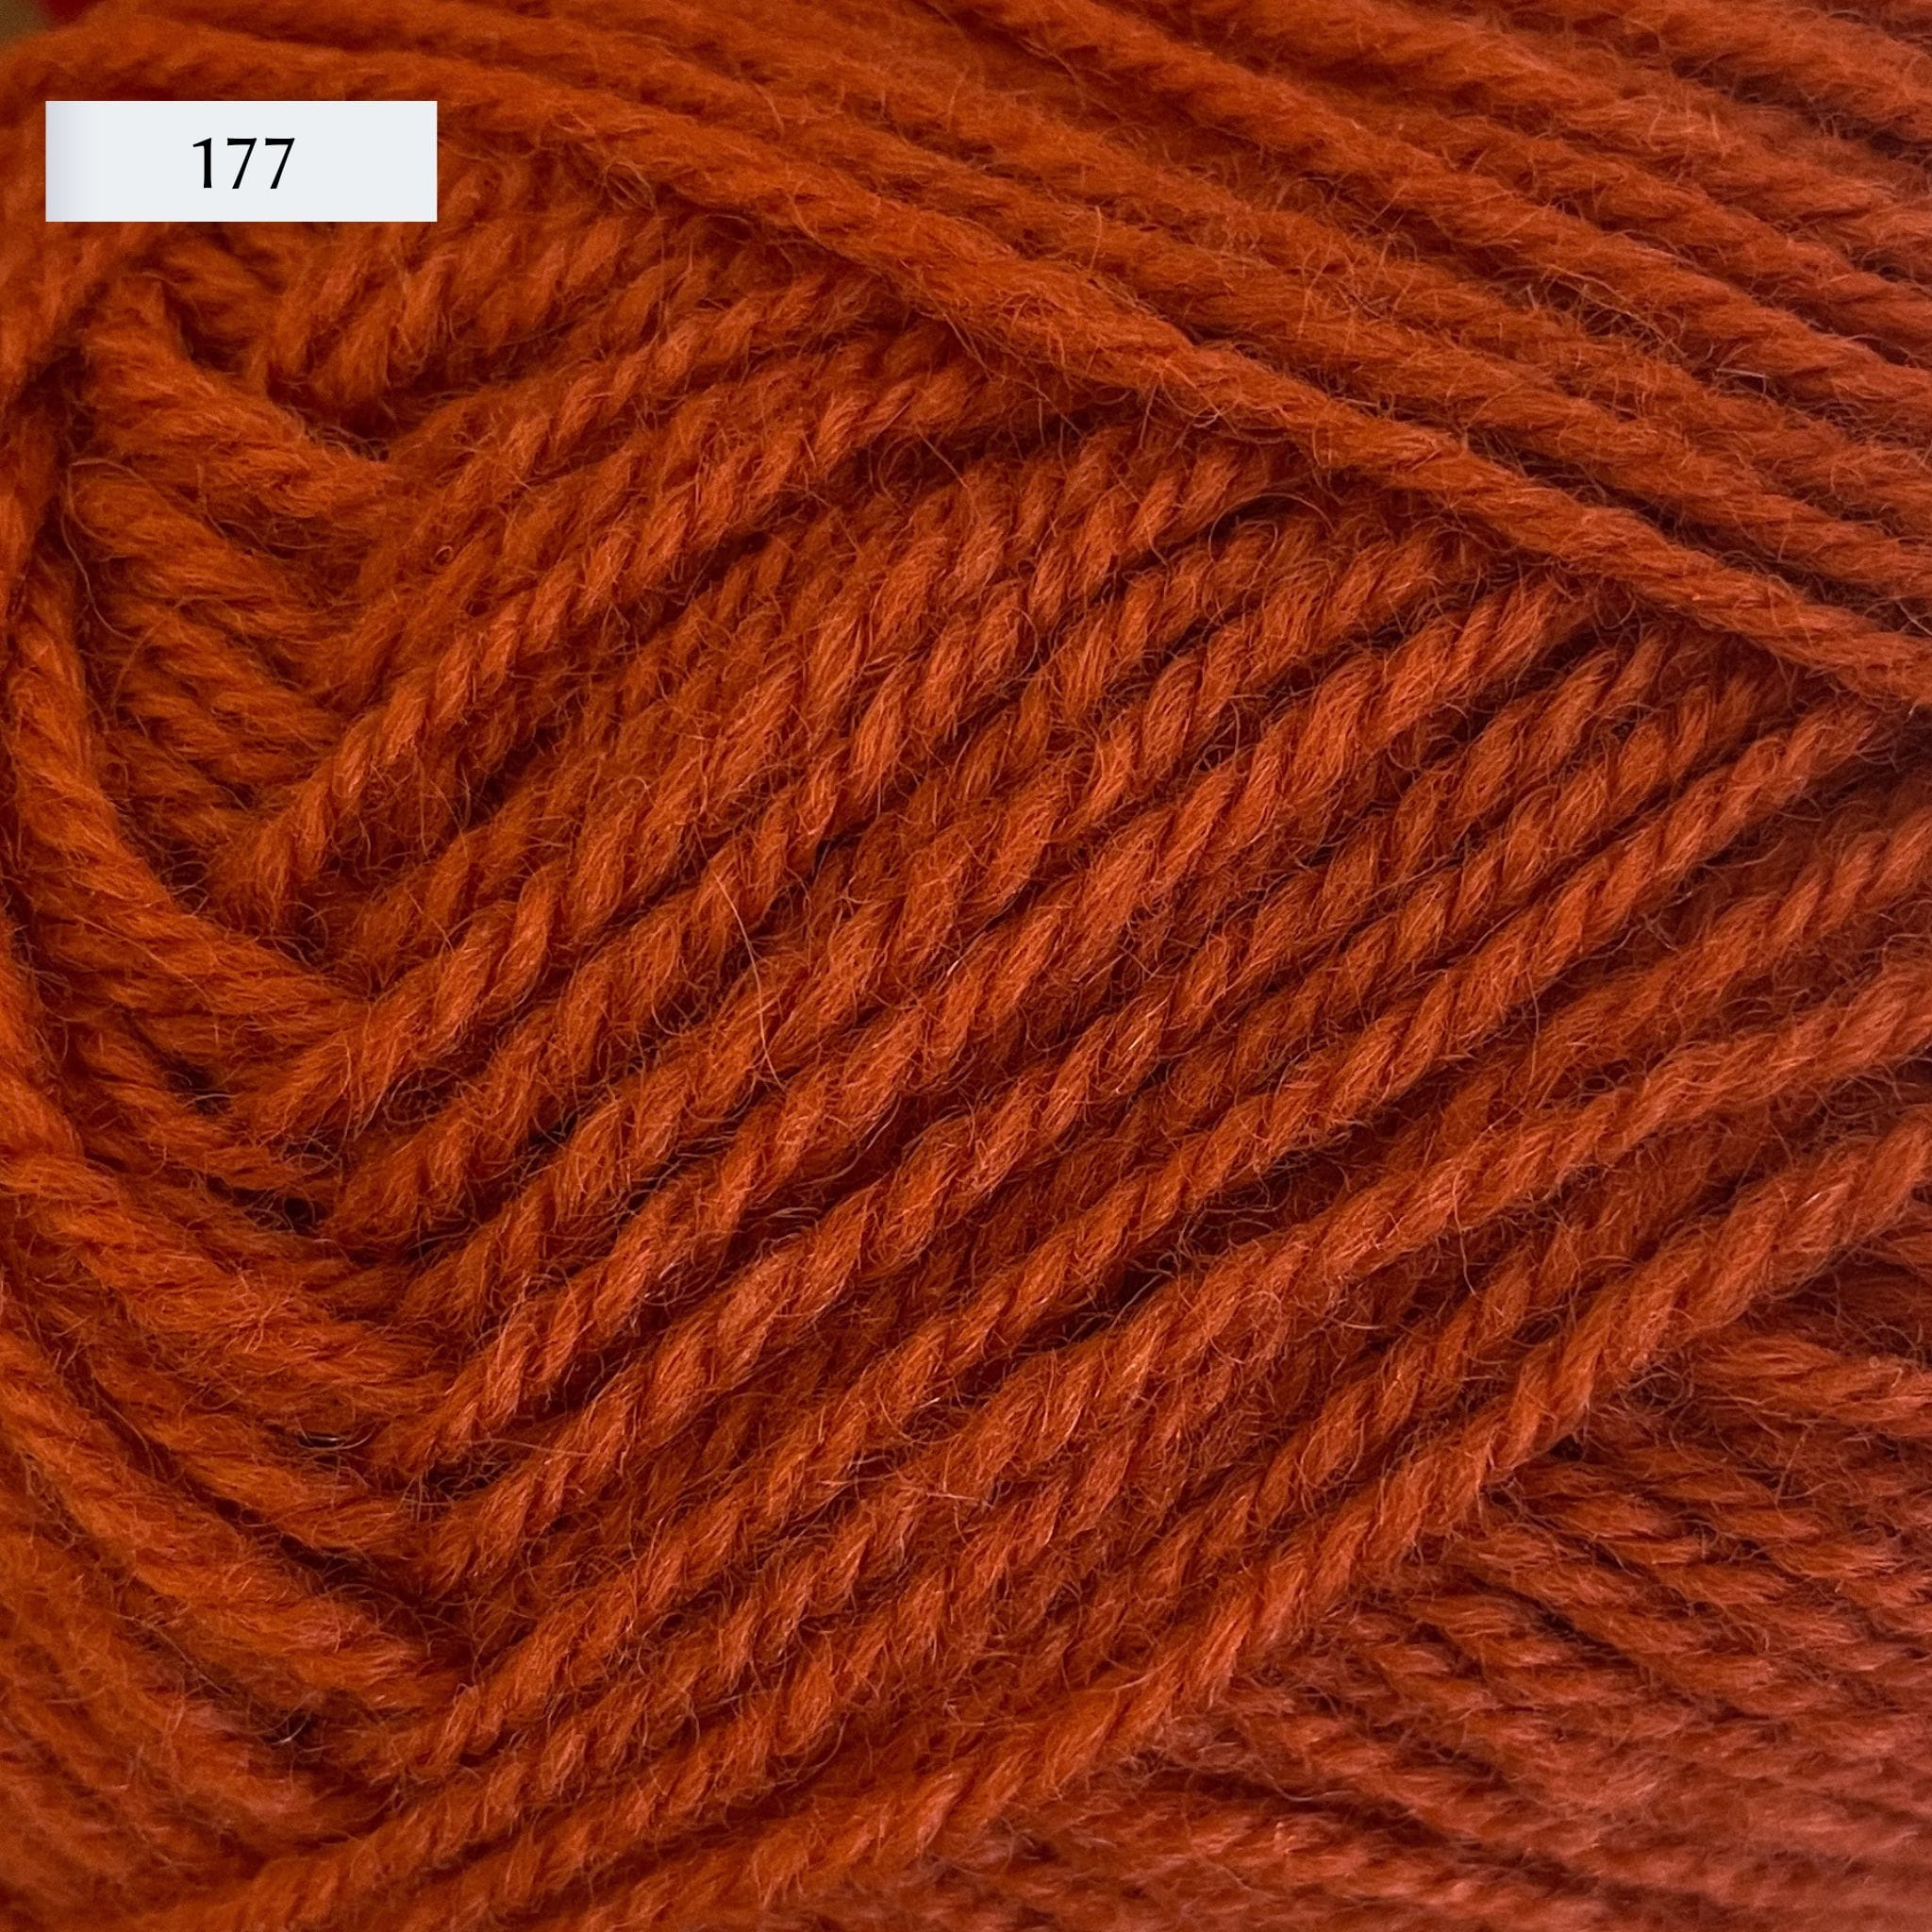 Rauma Strikkegarn, DK weight yarn, in color 177, copper orange